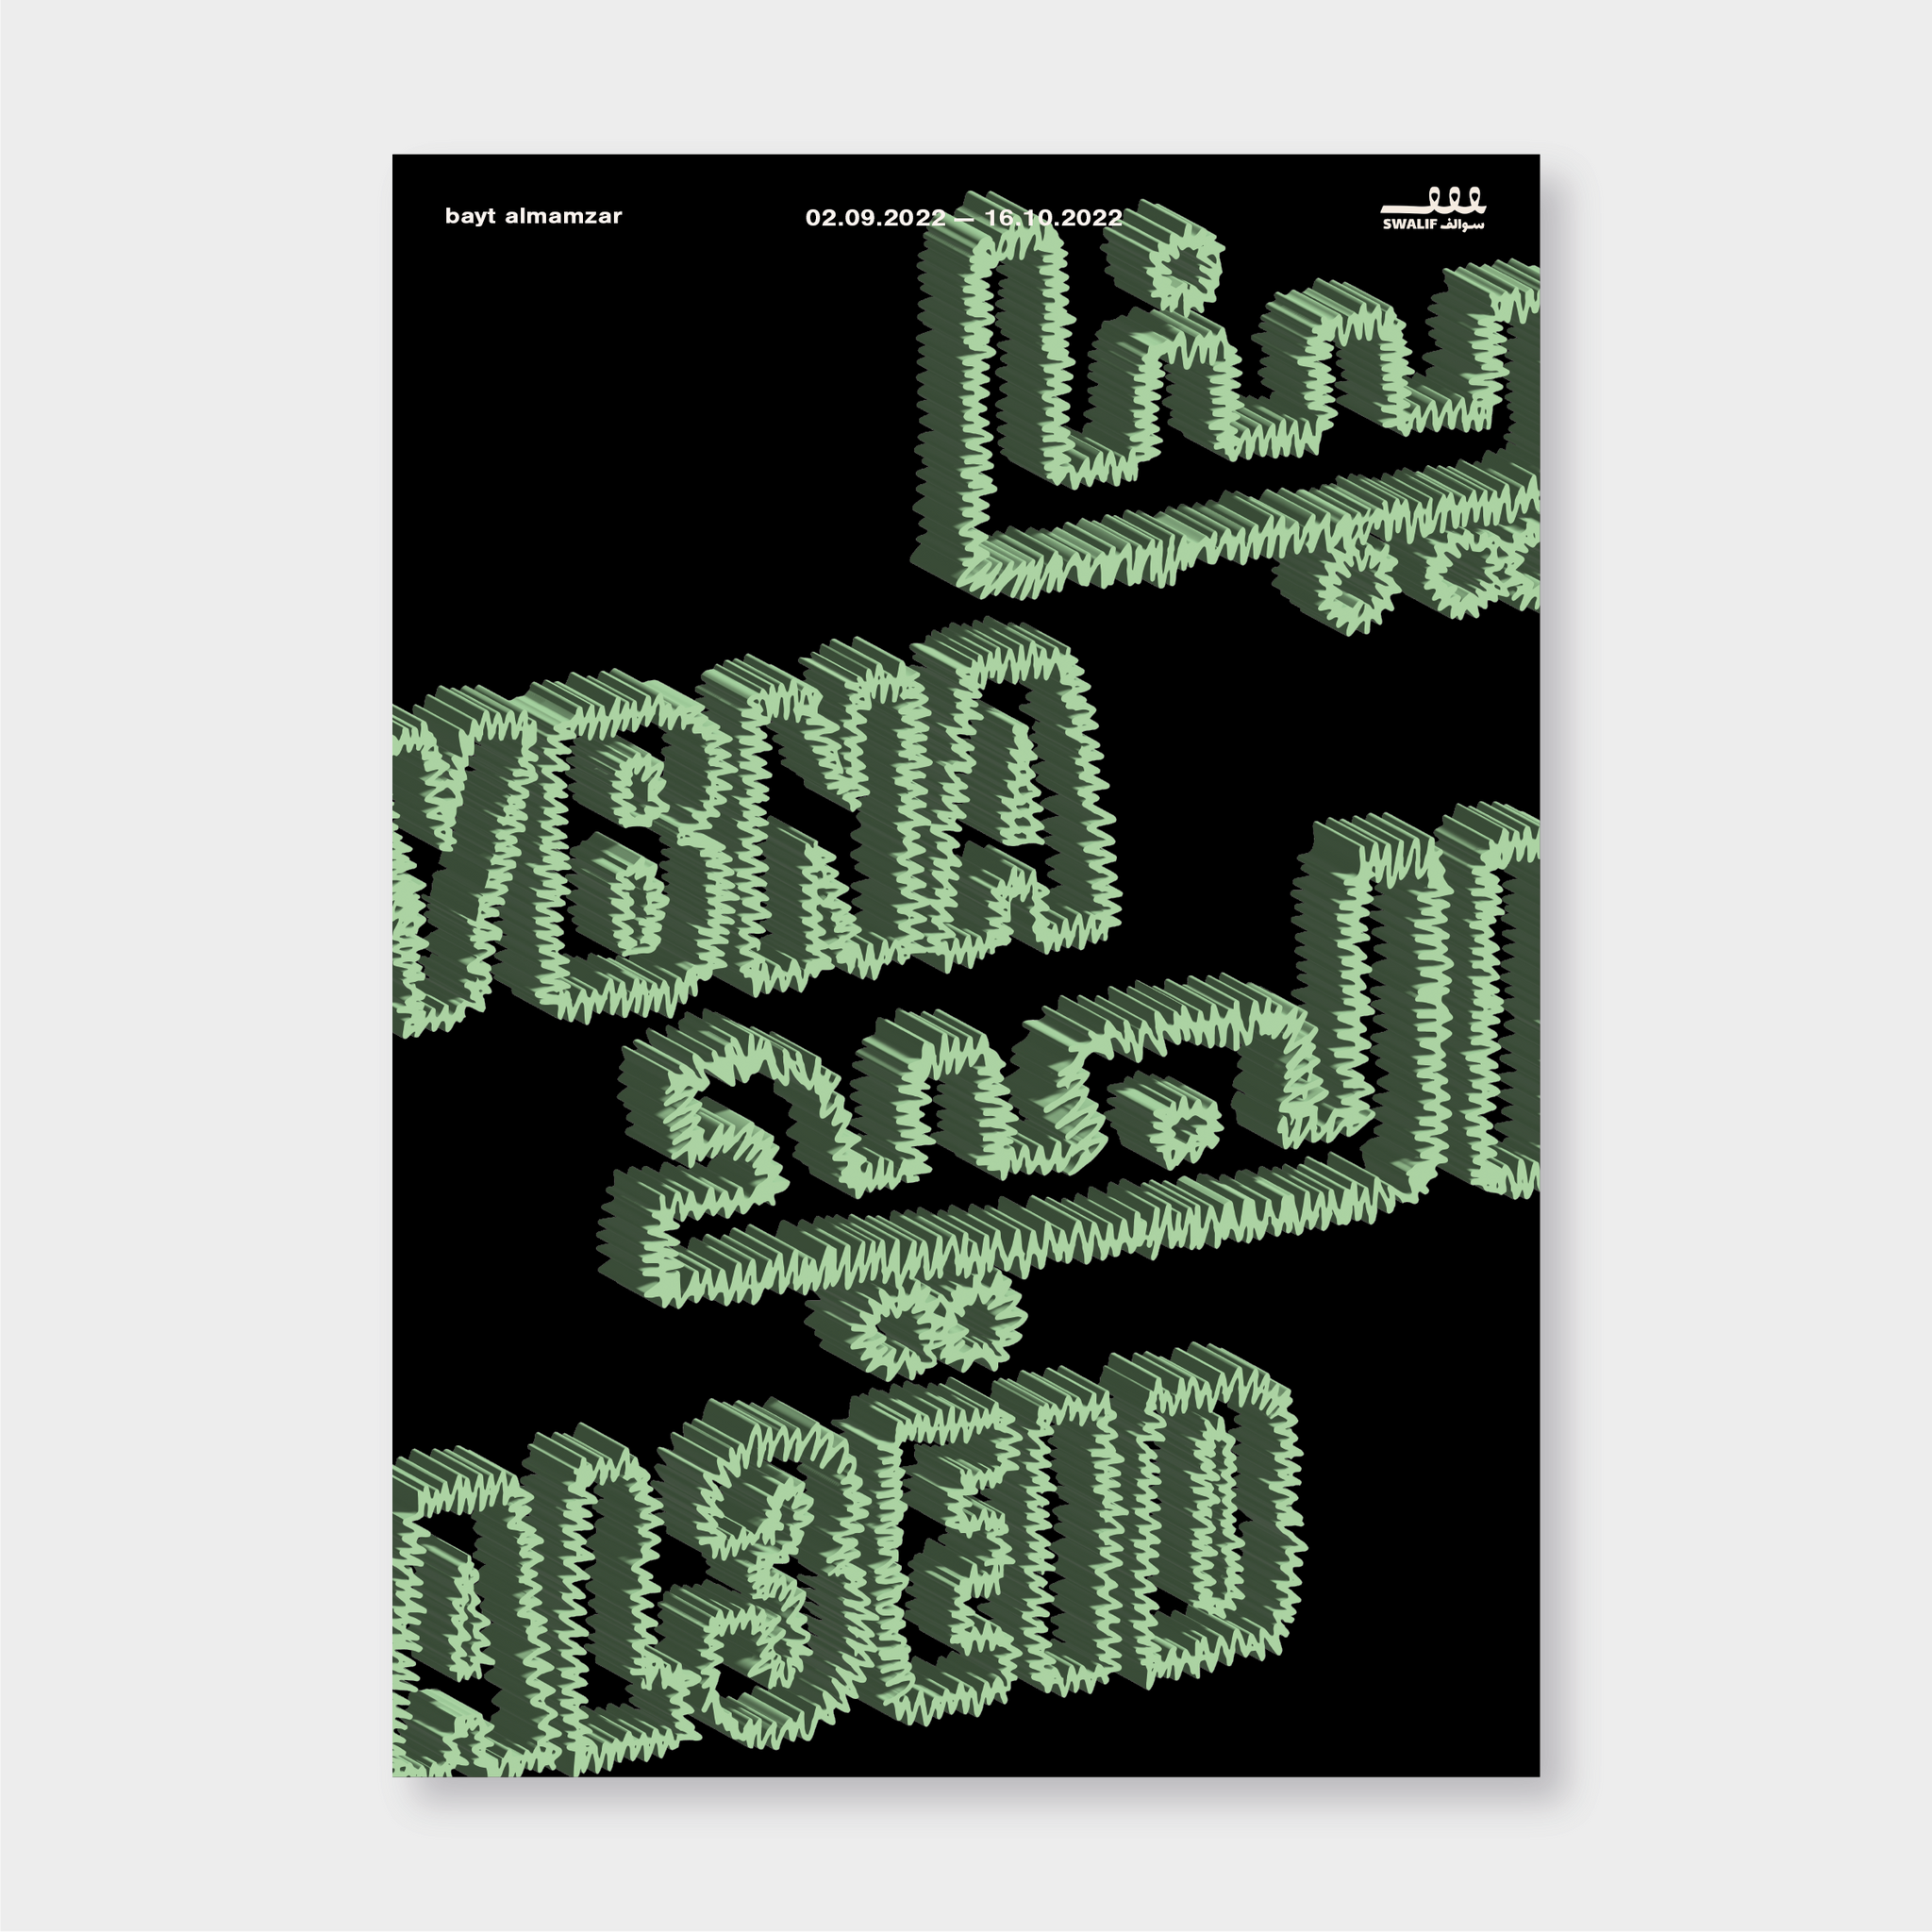 Ybna Al3eid Exhibition Poster/Catalogue